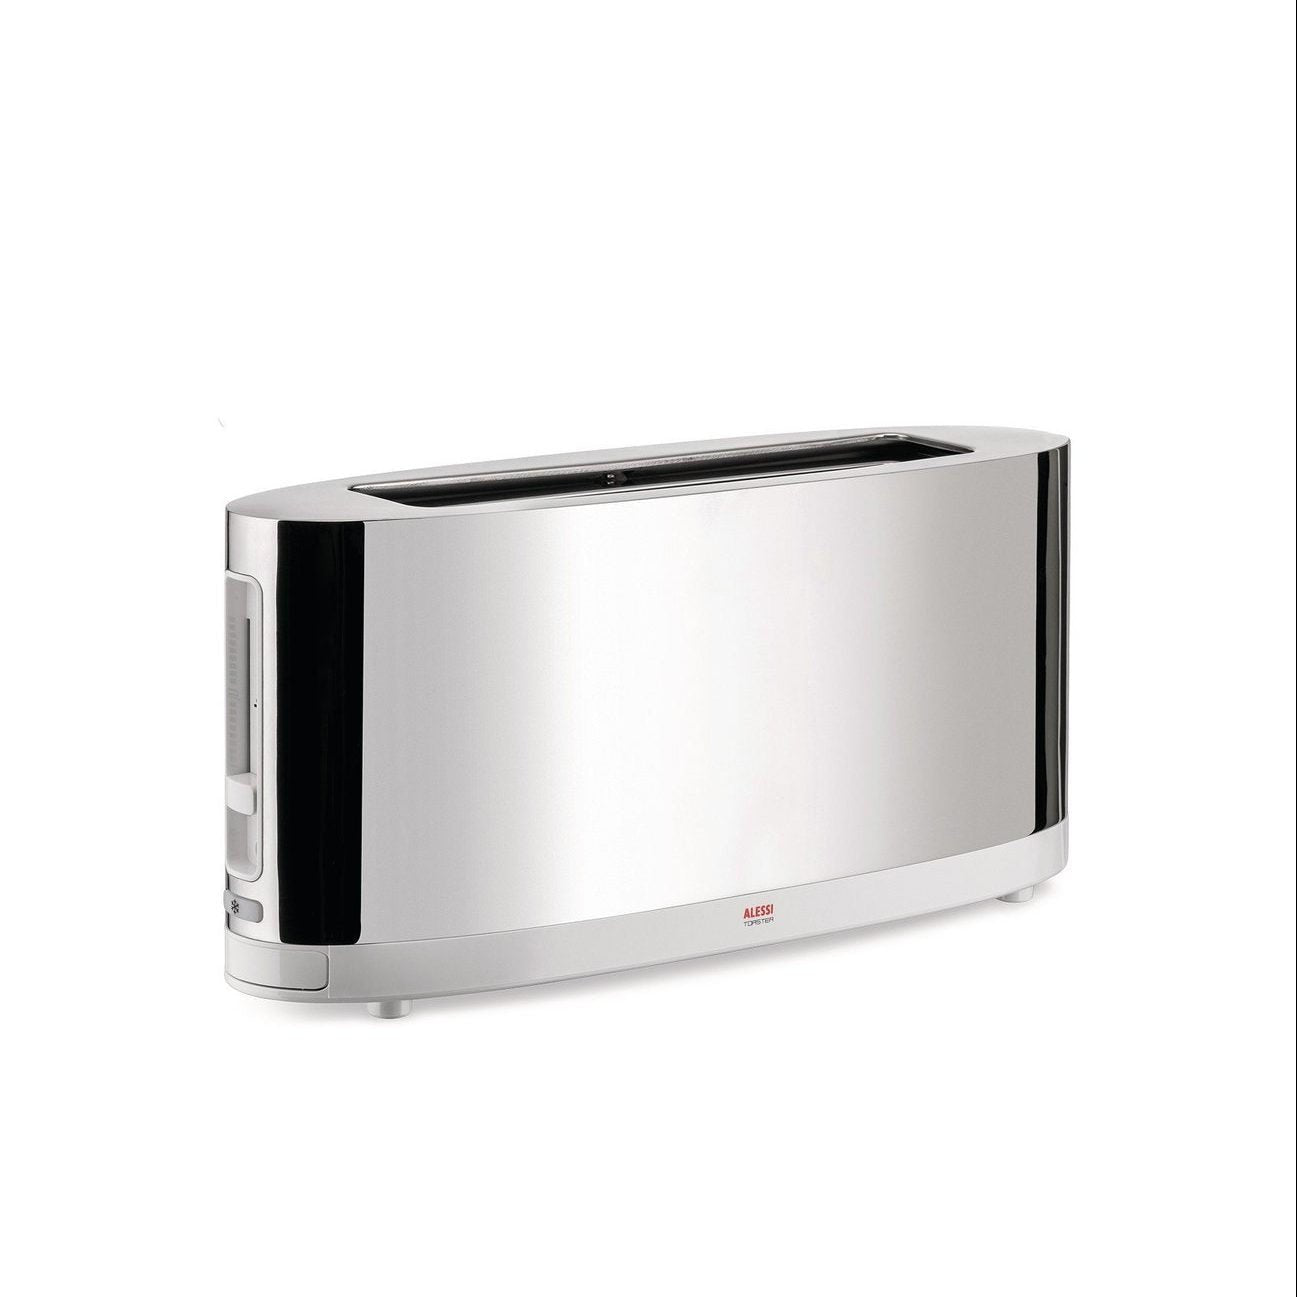 Alessi Toaster w Bun Warmer SG68 by Stefano Giovannoni | Panik Design